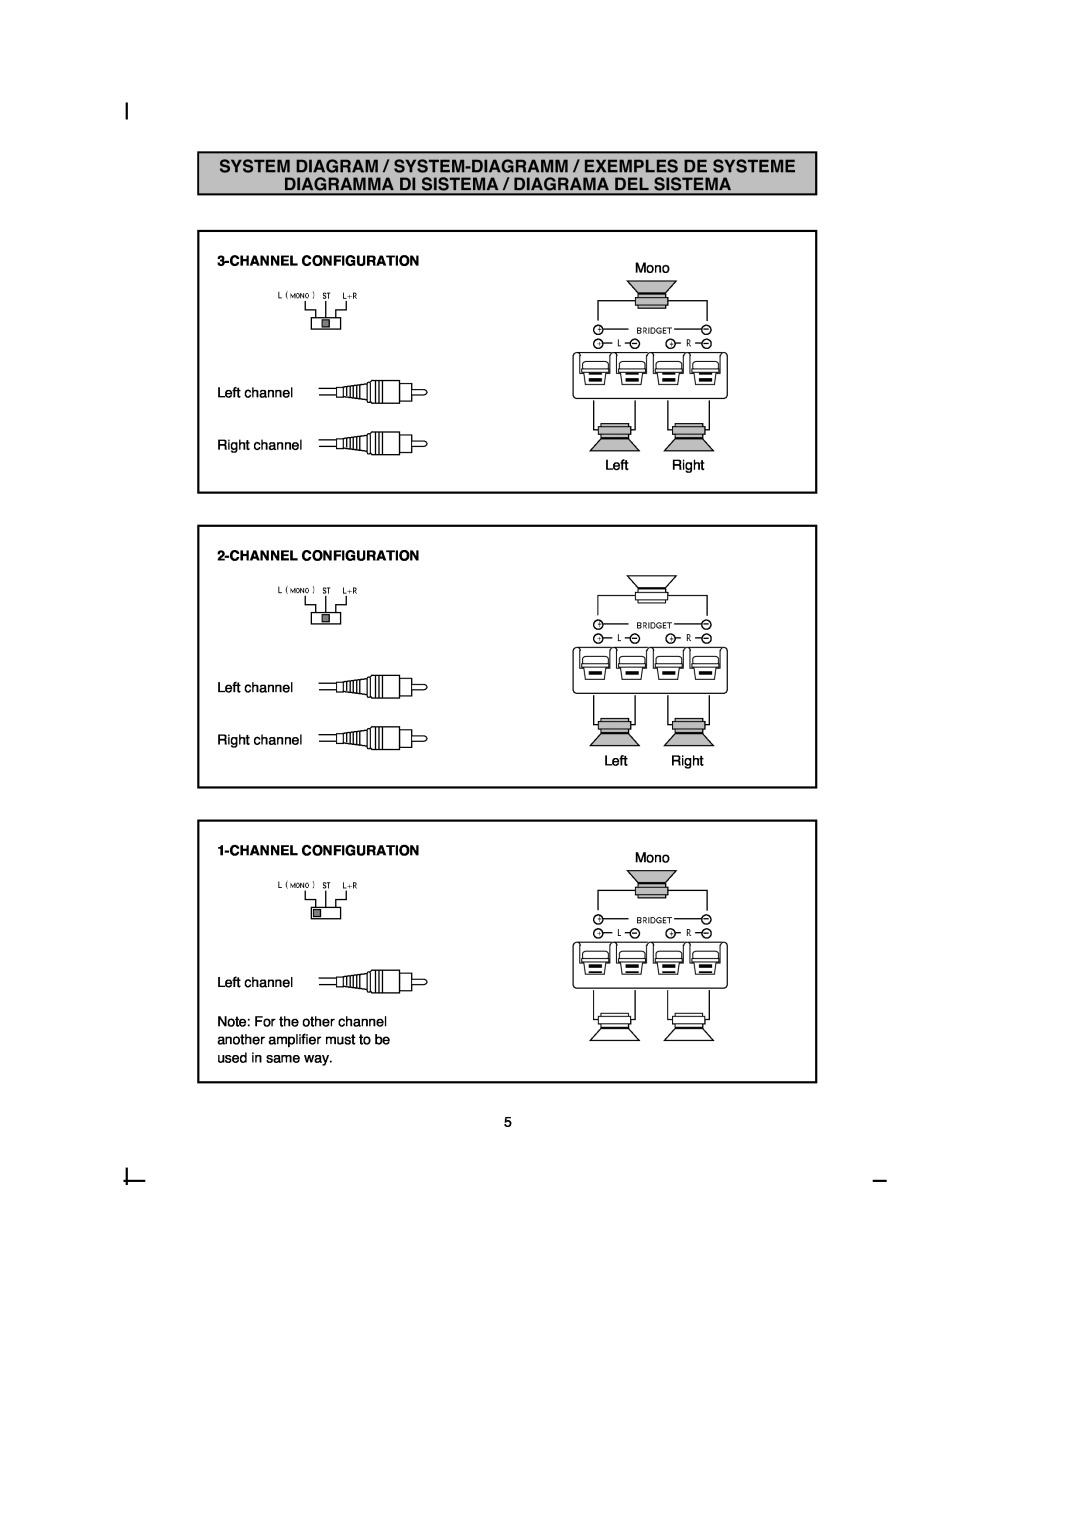 Macrom 42.26 Diagramma Di Sistema / Diagrama Del Sistema, Channelconfiguration, Left channel Right channel Left Right 